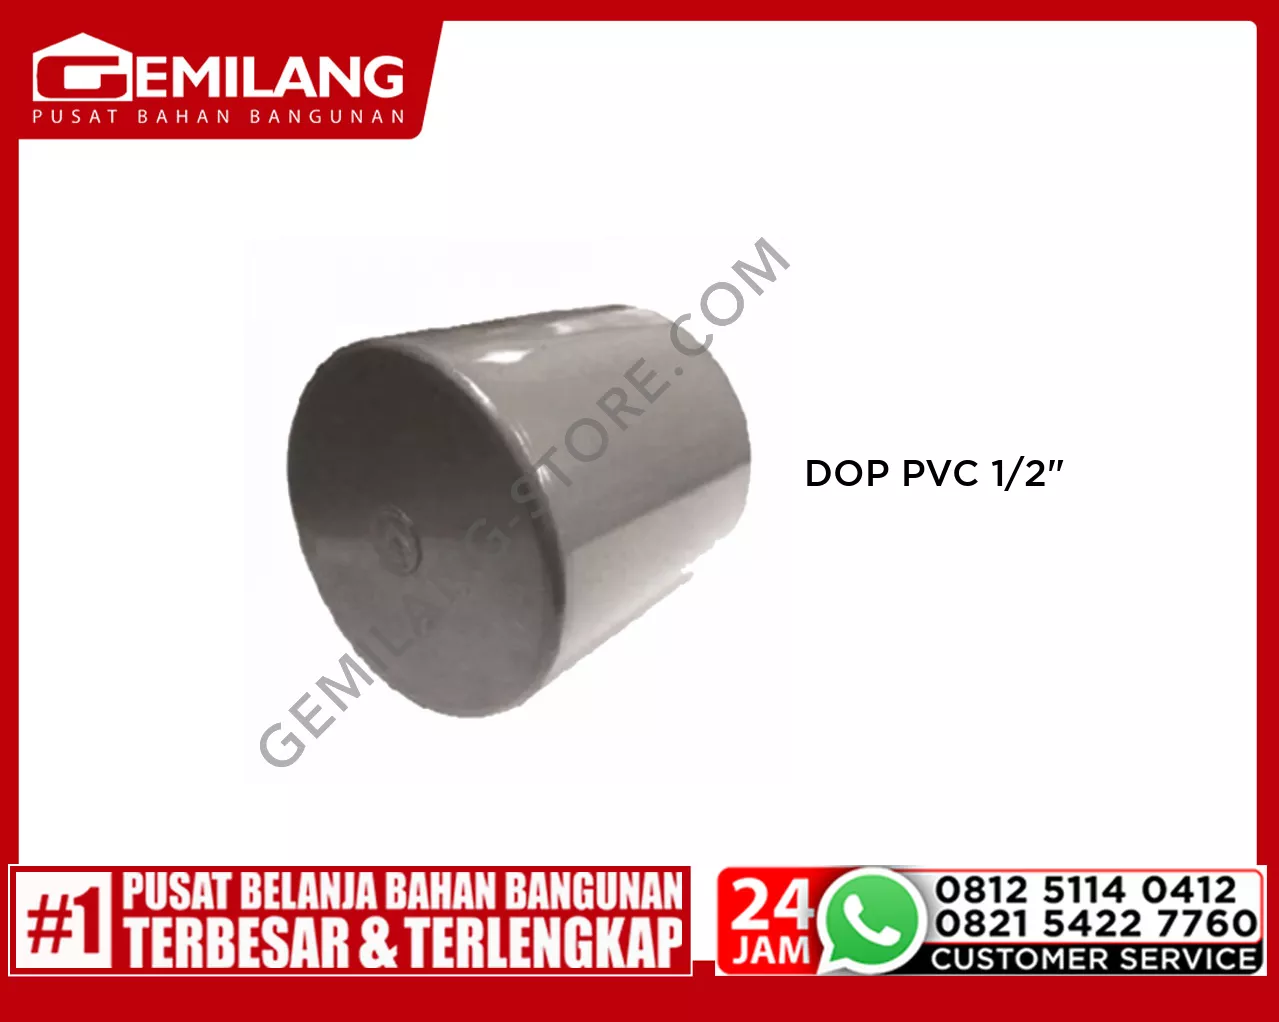 LANGGENG DOP PVC 1/2inch